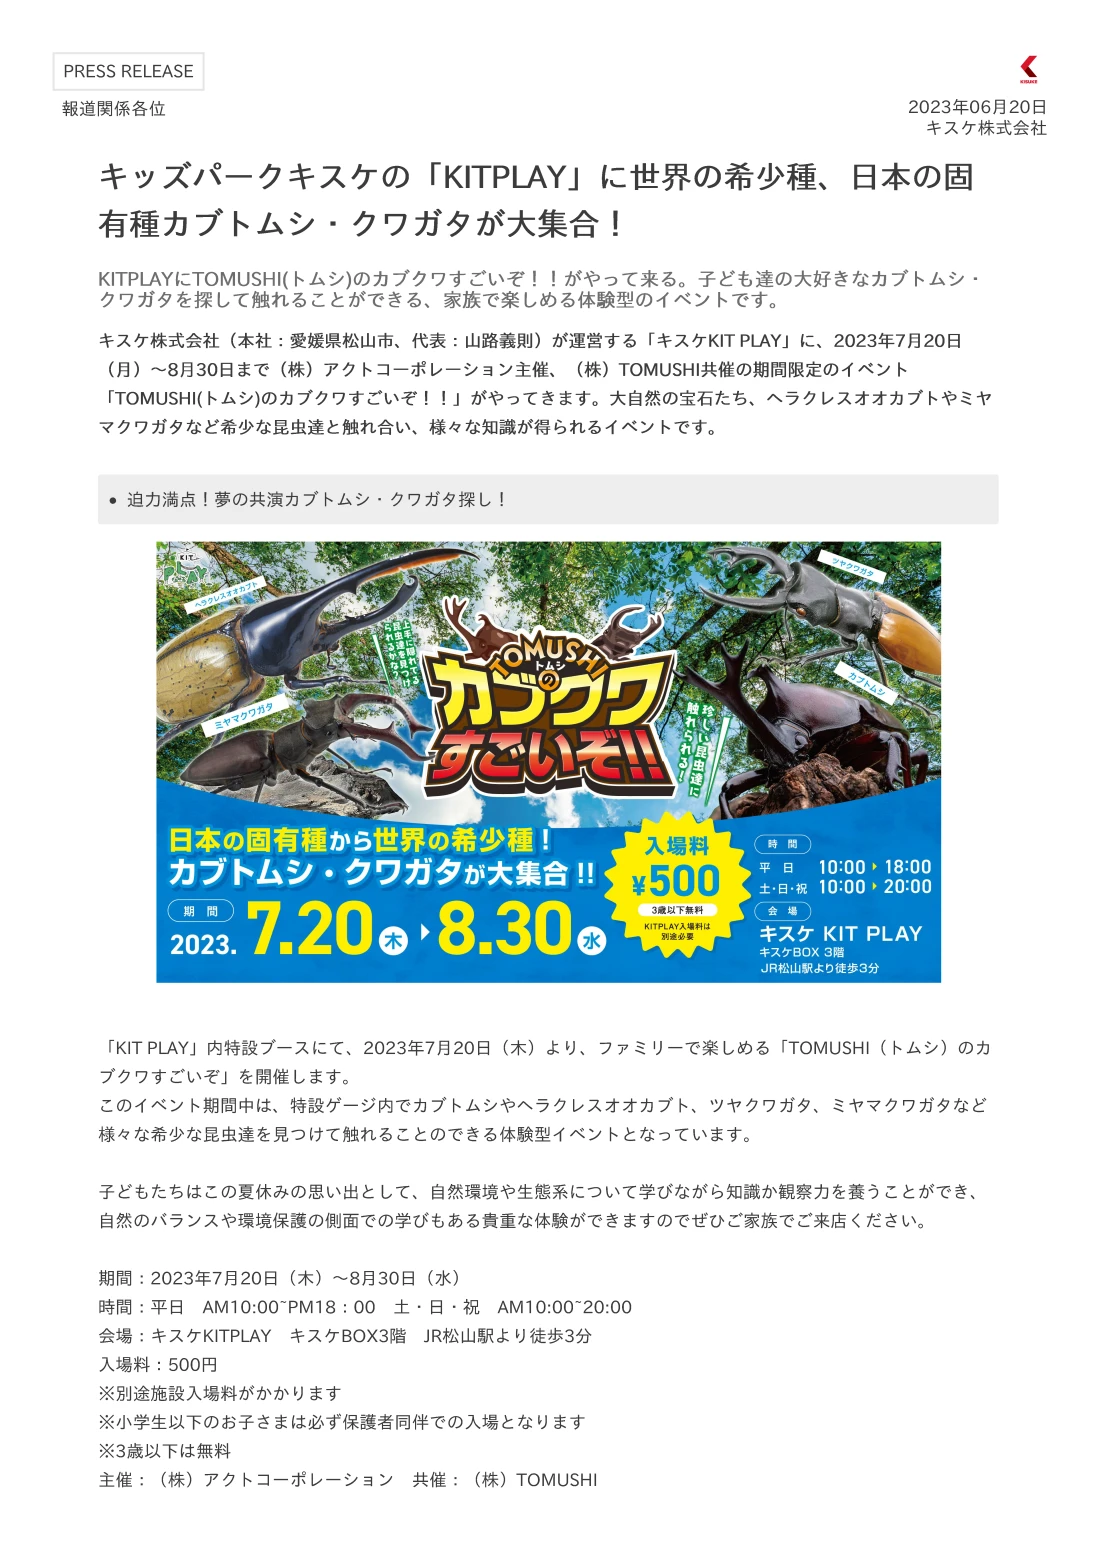 キスケ株式会社（本社：愛媛県松山市、代表：山路義則）が運営する「キスケKIT PLAY」に、2023年7月20日（月）～8月30日まで（株）アクトコーポレーション主催、（株）TOMUSHI共催の期間限定のイベント「TOMUSHI(トムシ)のカブクワすごいぞ！！」がやってきます。大自然の宝石たち、ヘラクレスオオカブトやミヤマクワガタなど希少な昆虫達と触れ合い、様々な知識が得られるイベントです。 